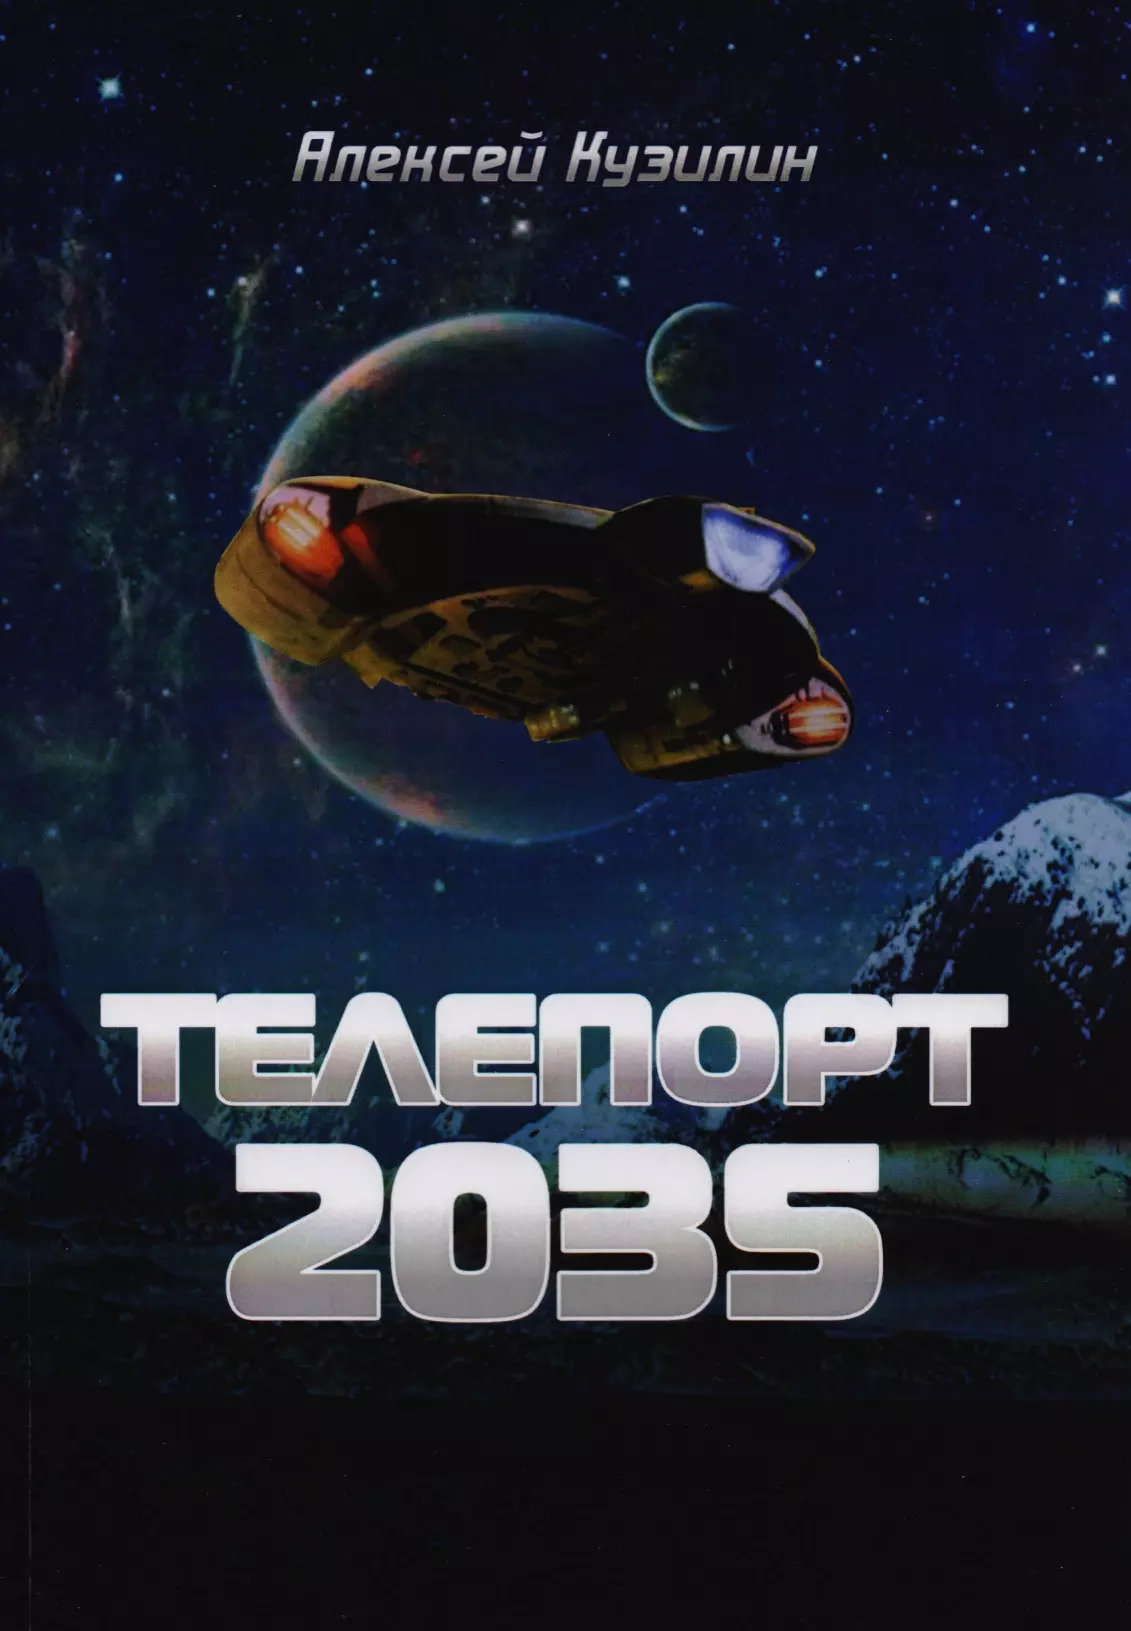 Кузилин Алексей Александрович - Телепорт 2035